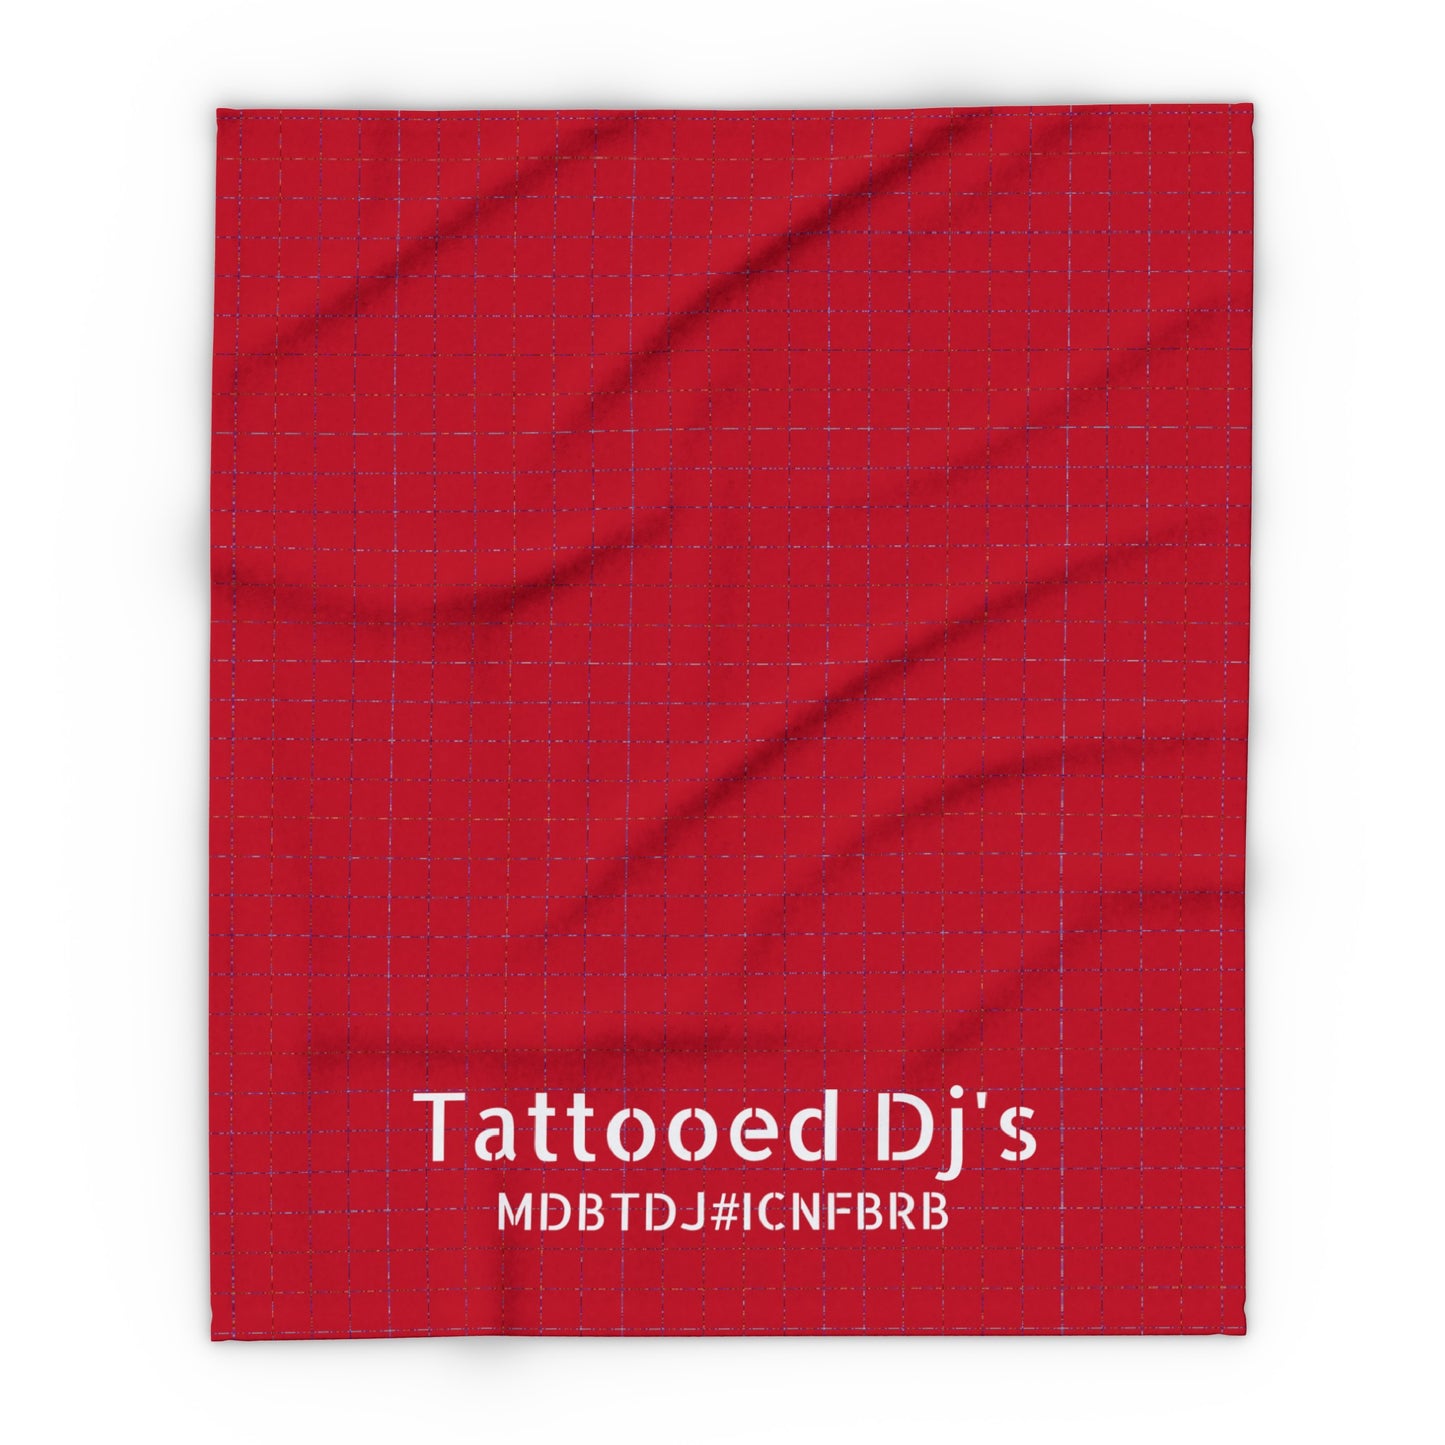 MDBTDJ#ICNFBRB Fleece Blanket Tattooed Dj's Limited Edition, Home Decor, Tattooed Djs Shop